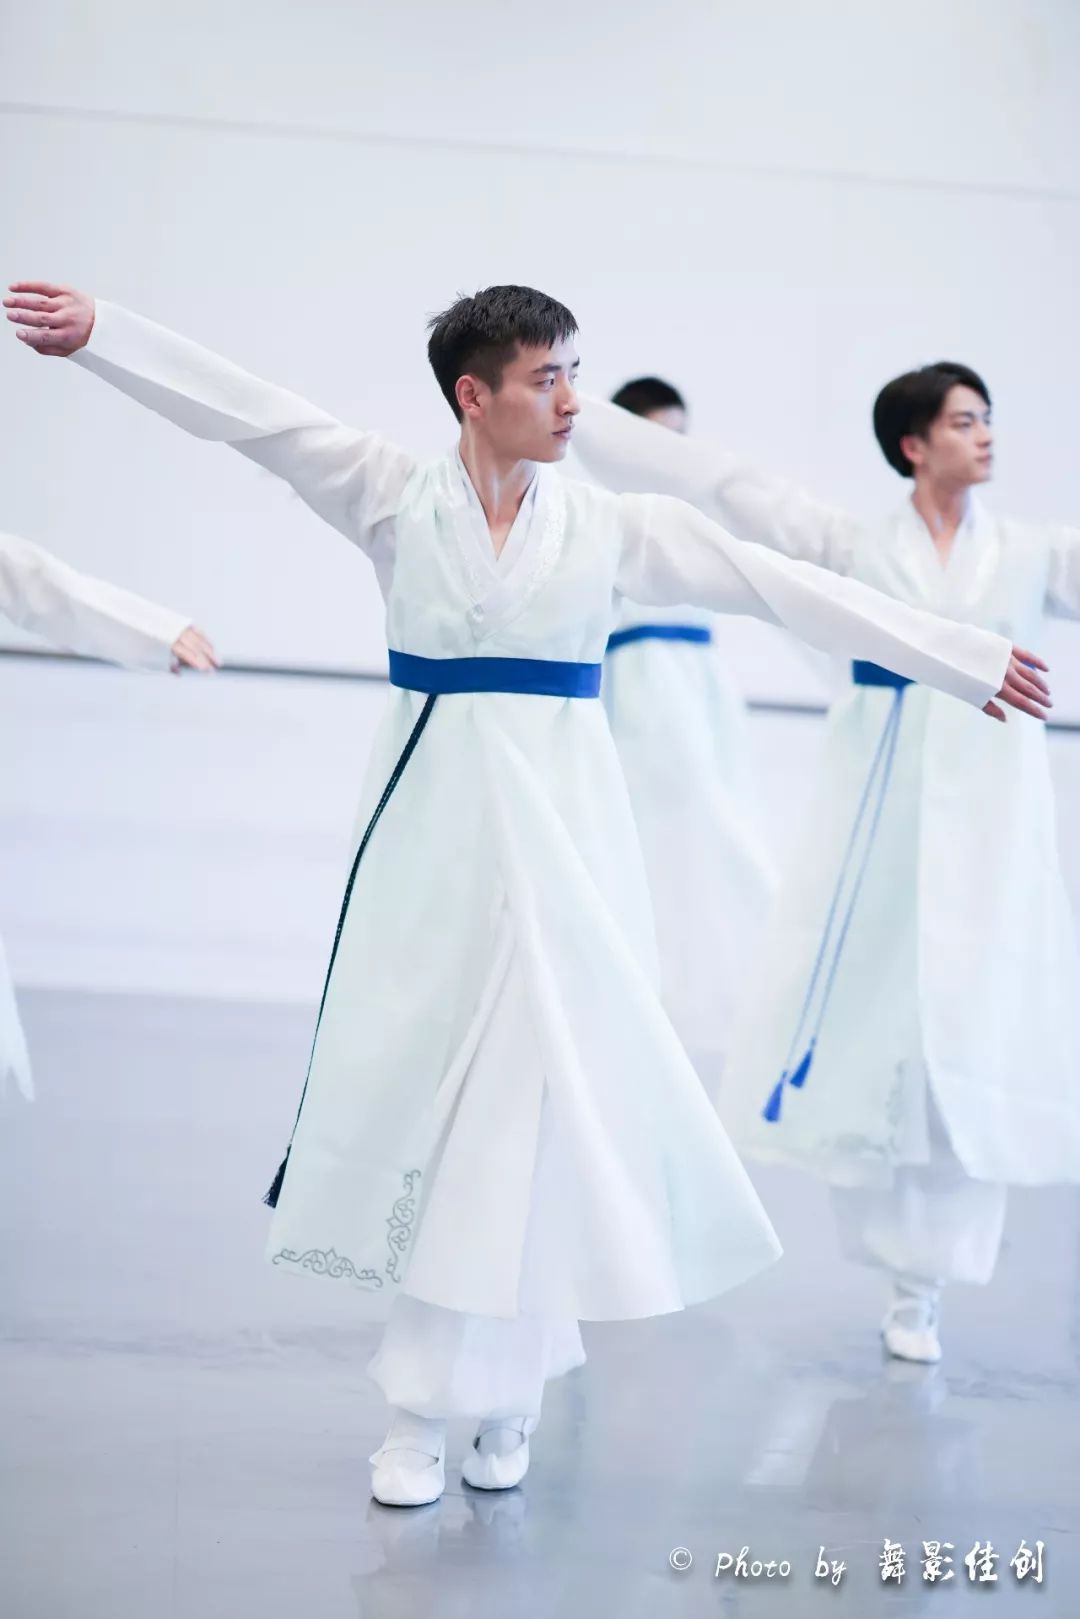 上海戏剧学院舞蹈学院2016级中国舞男班朝鲜族舞蹈课堂精彩瞬间